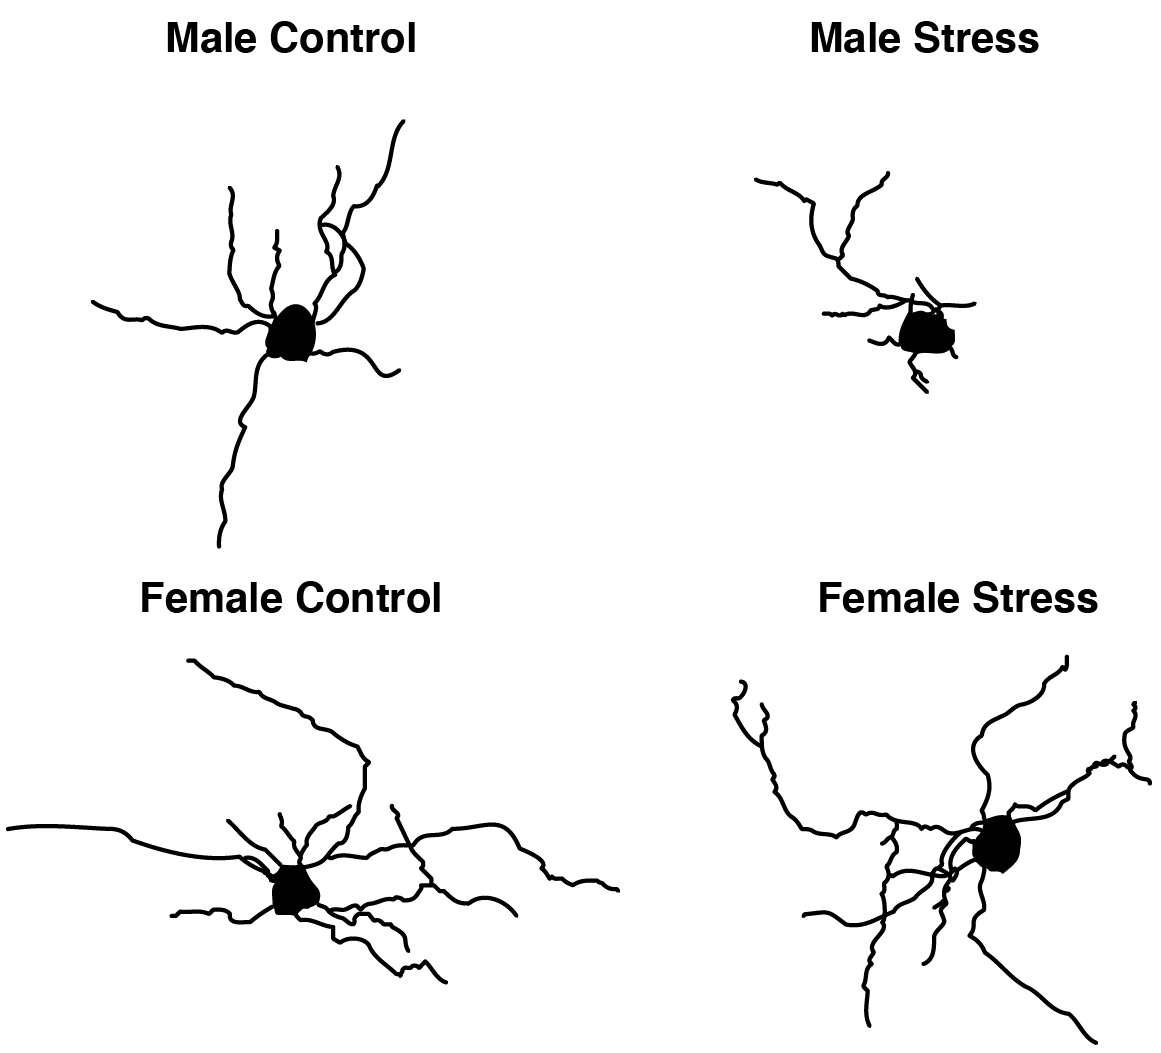 Une présentation squelettique d'oligodendrocytes individuels illustre comment le stress produit des effets différents sur la structure des cellules cérébrales chez les souris mâles et femelles. Les oligodendrocytes des mâles perdent de leur complexité après une exposition au stress (en haut), ce qui n'est pas observé dans ces cellules chez les femelles (en bas).
